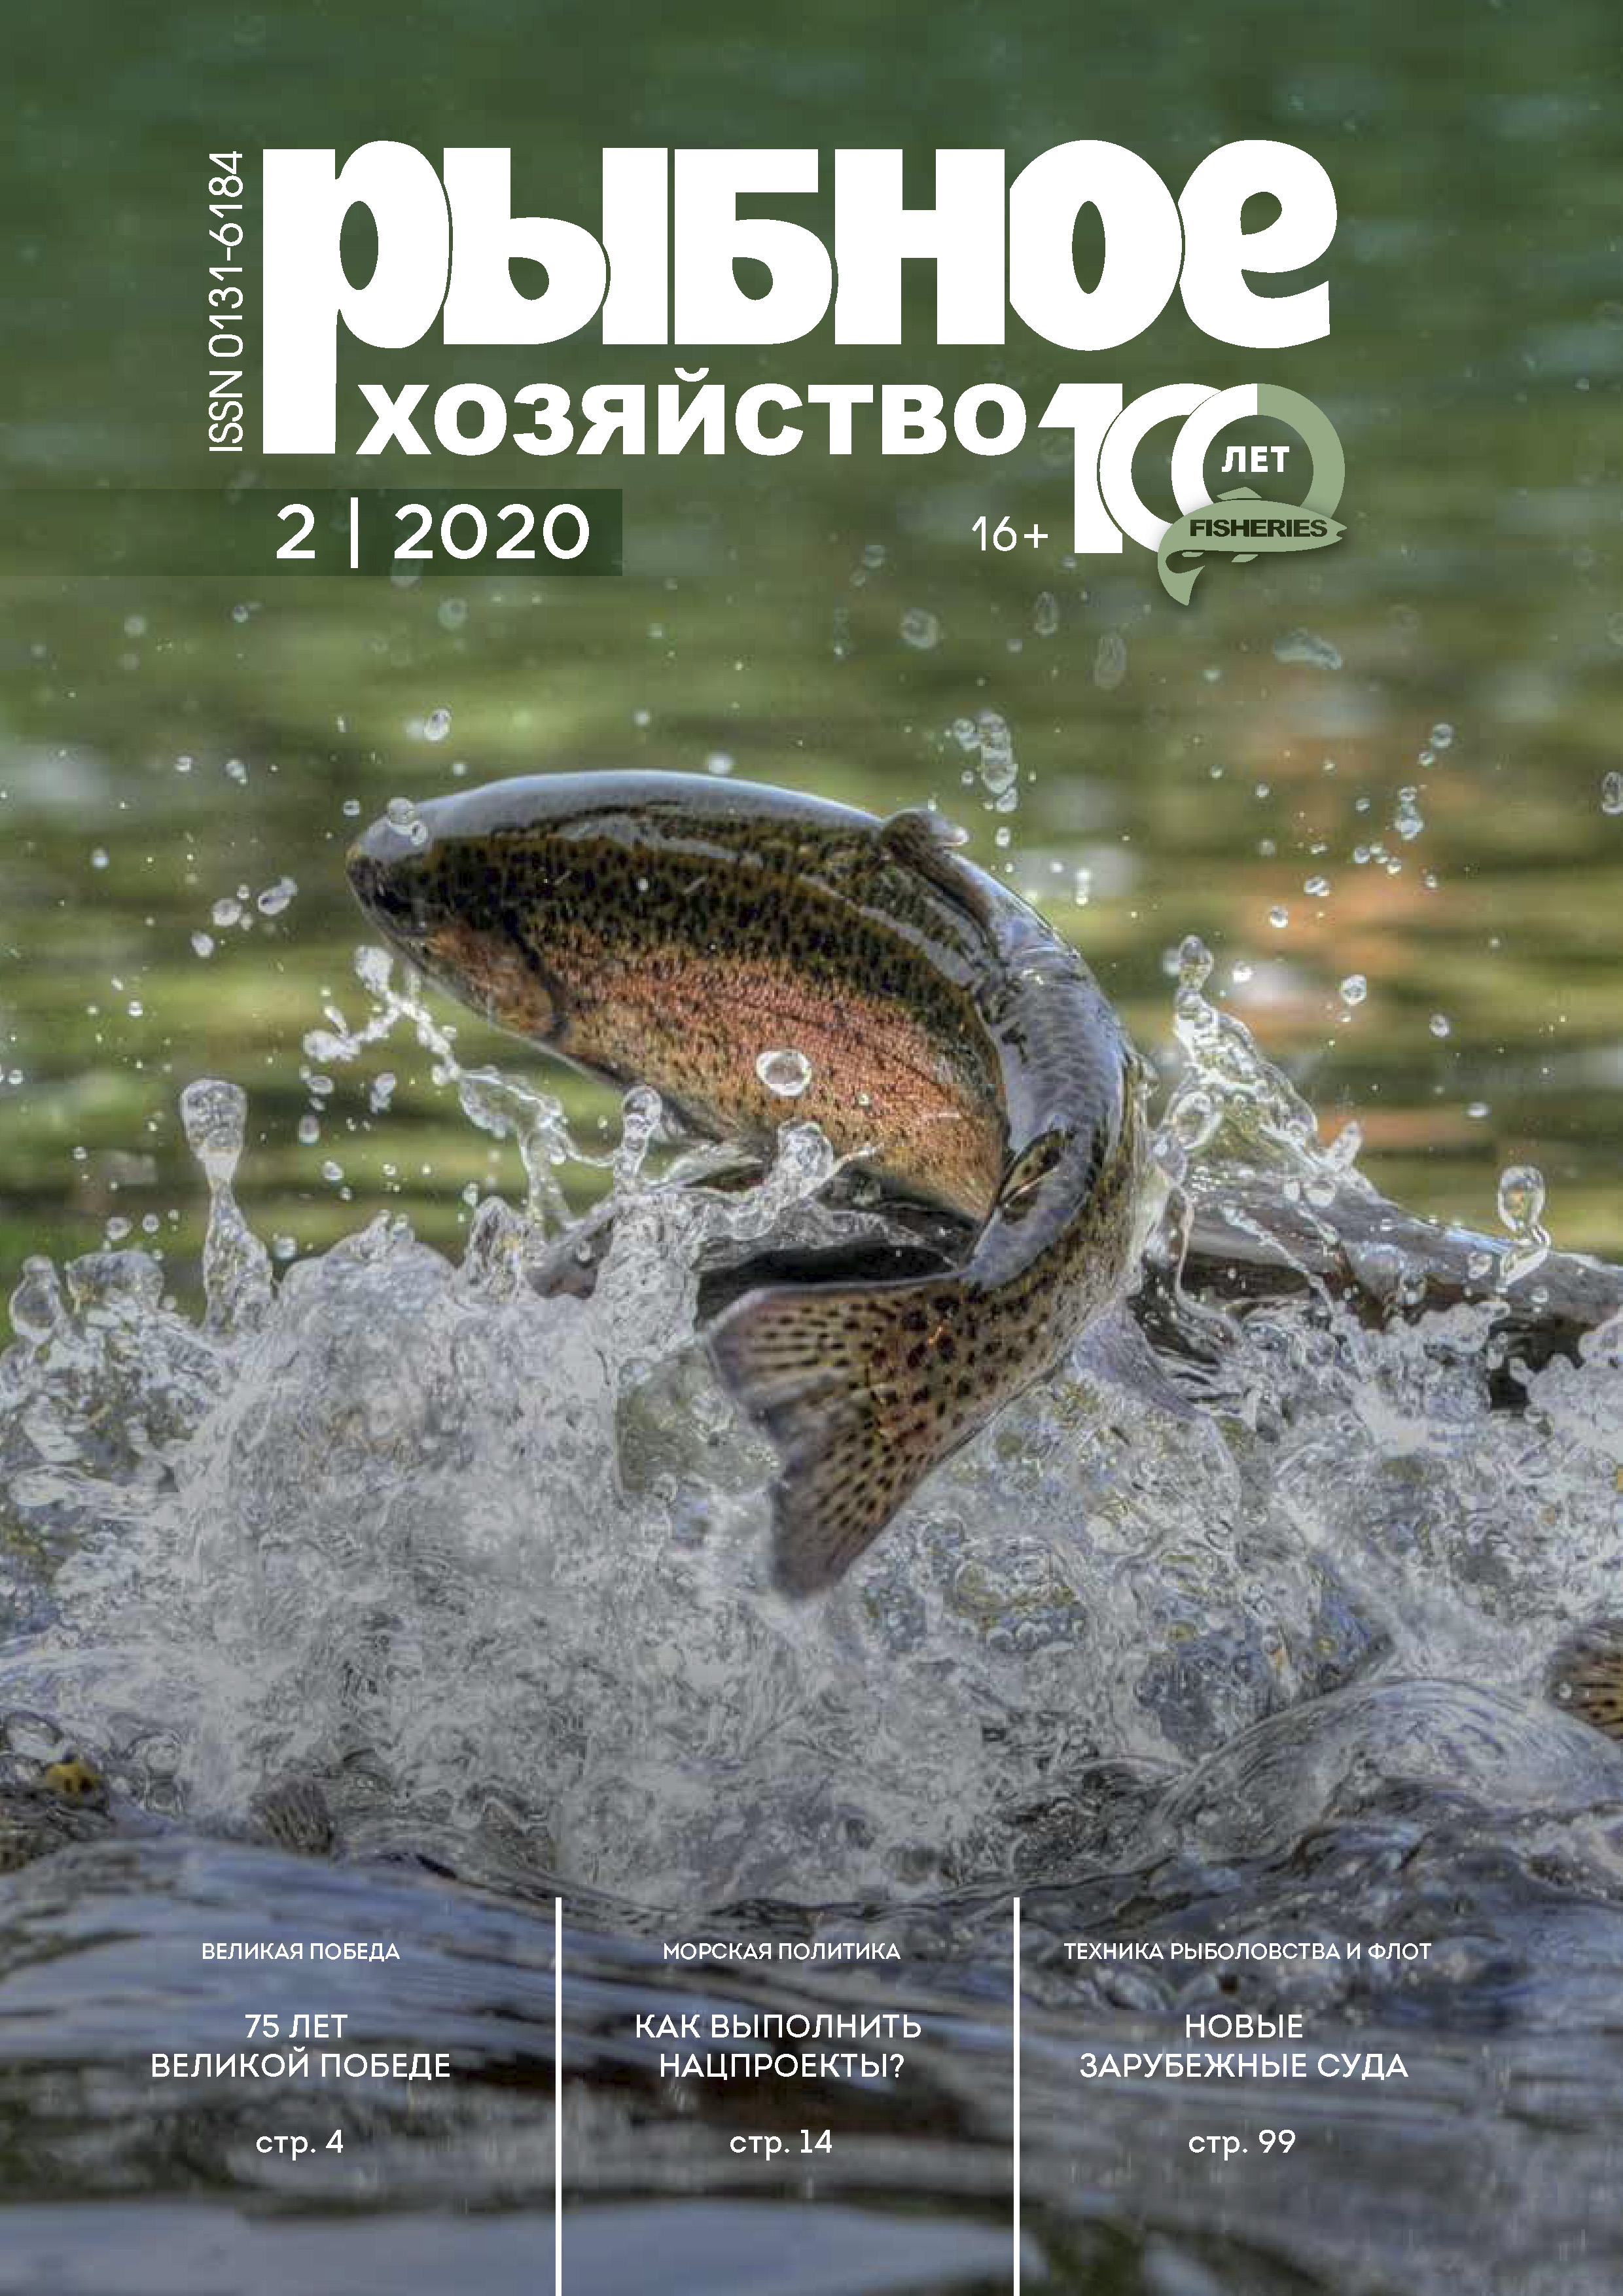             Эффективность размножения полупроходных и речных рыб реки Волга в различные,  по водности и режиму половодья,  годовые периоды
    